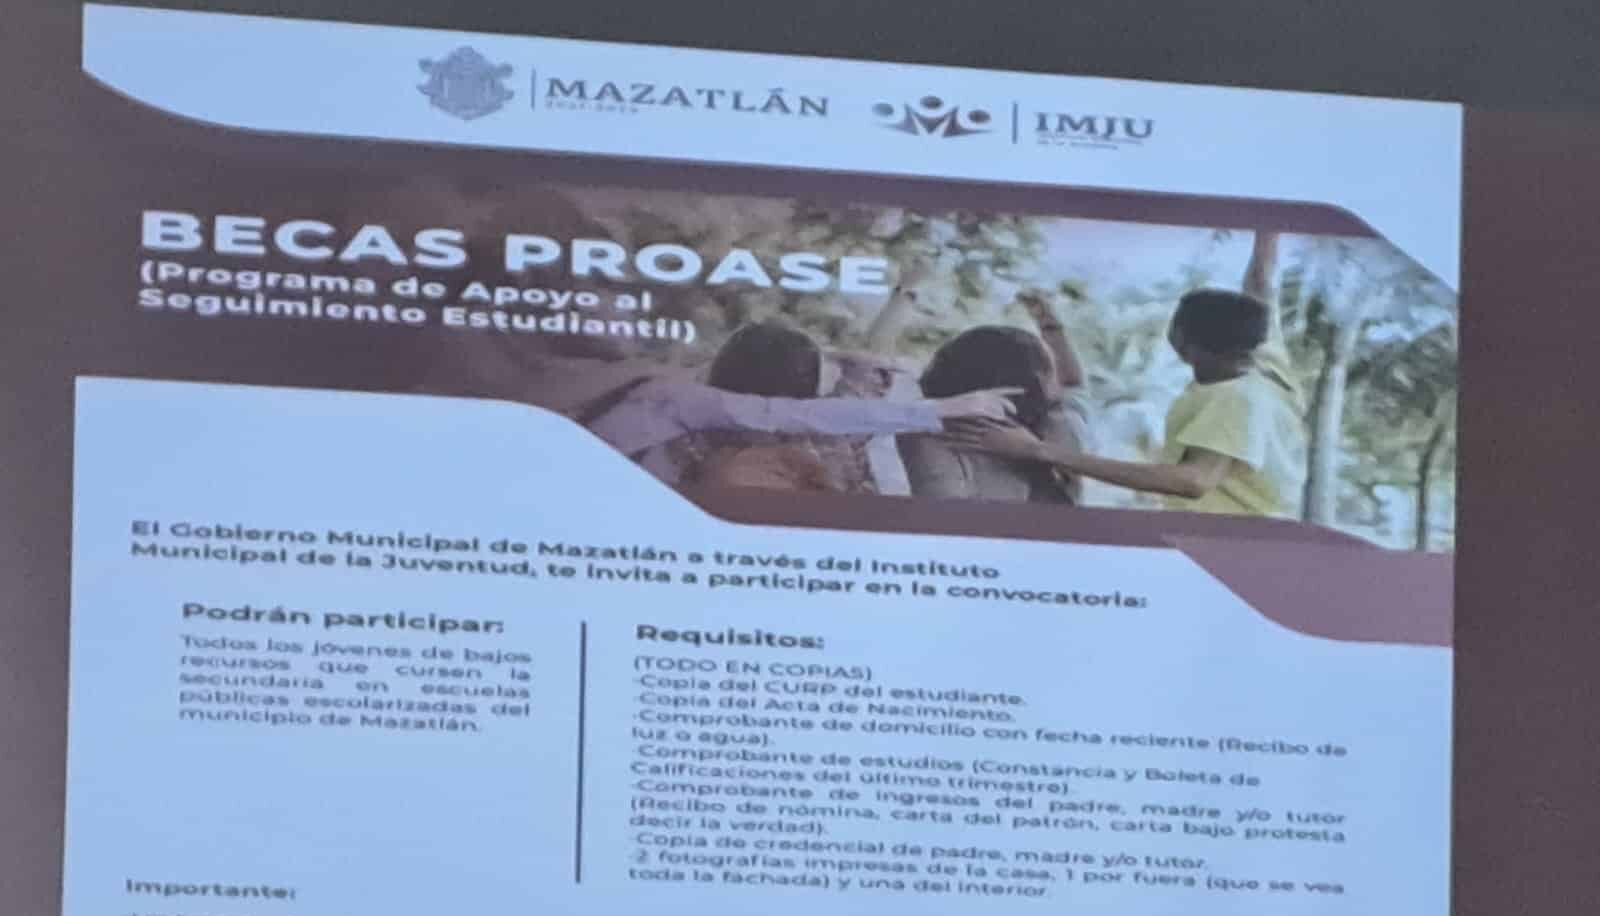 Lanza IMJU convocatorias para obtener becas Proase en Mazatlán